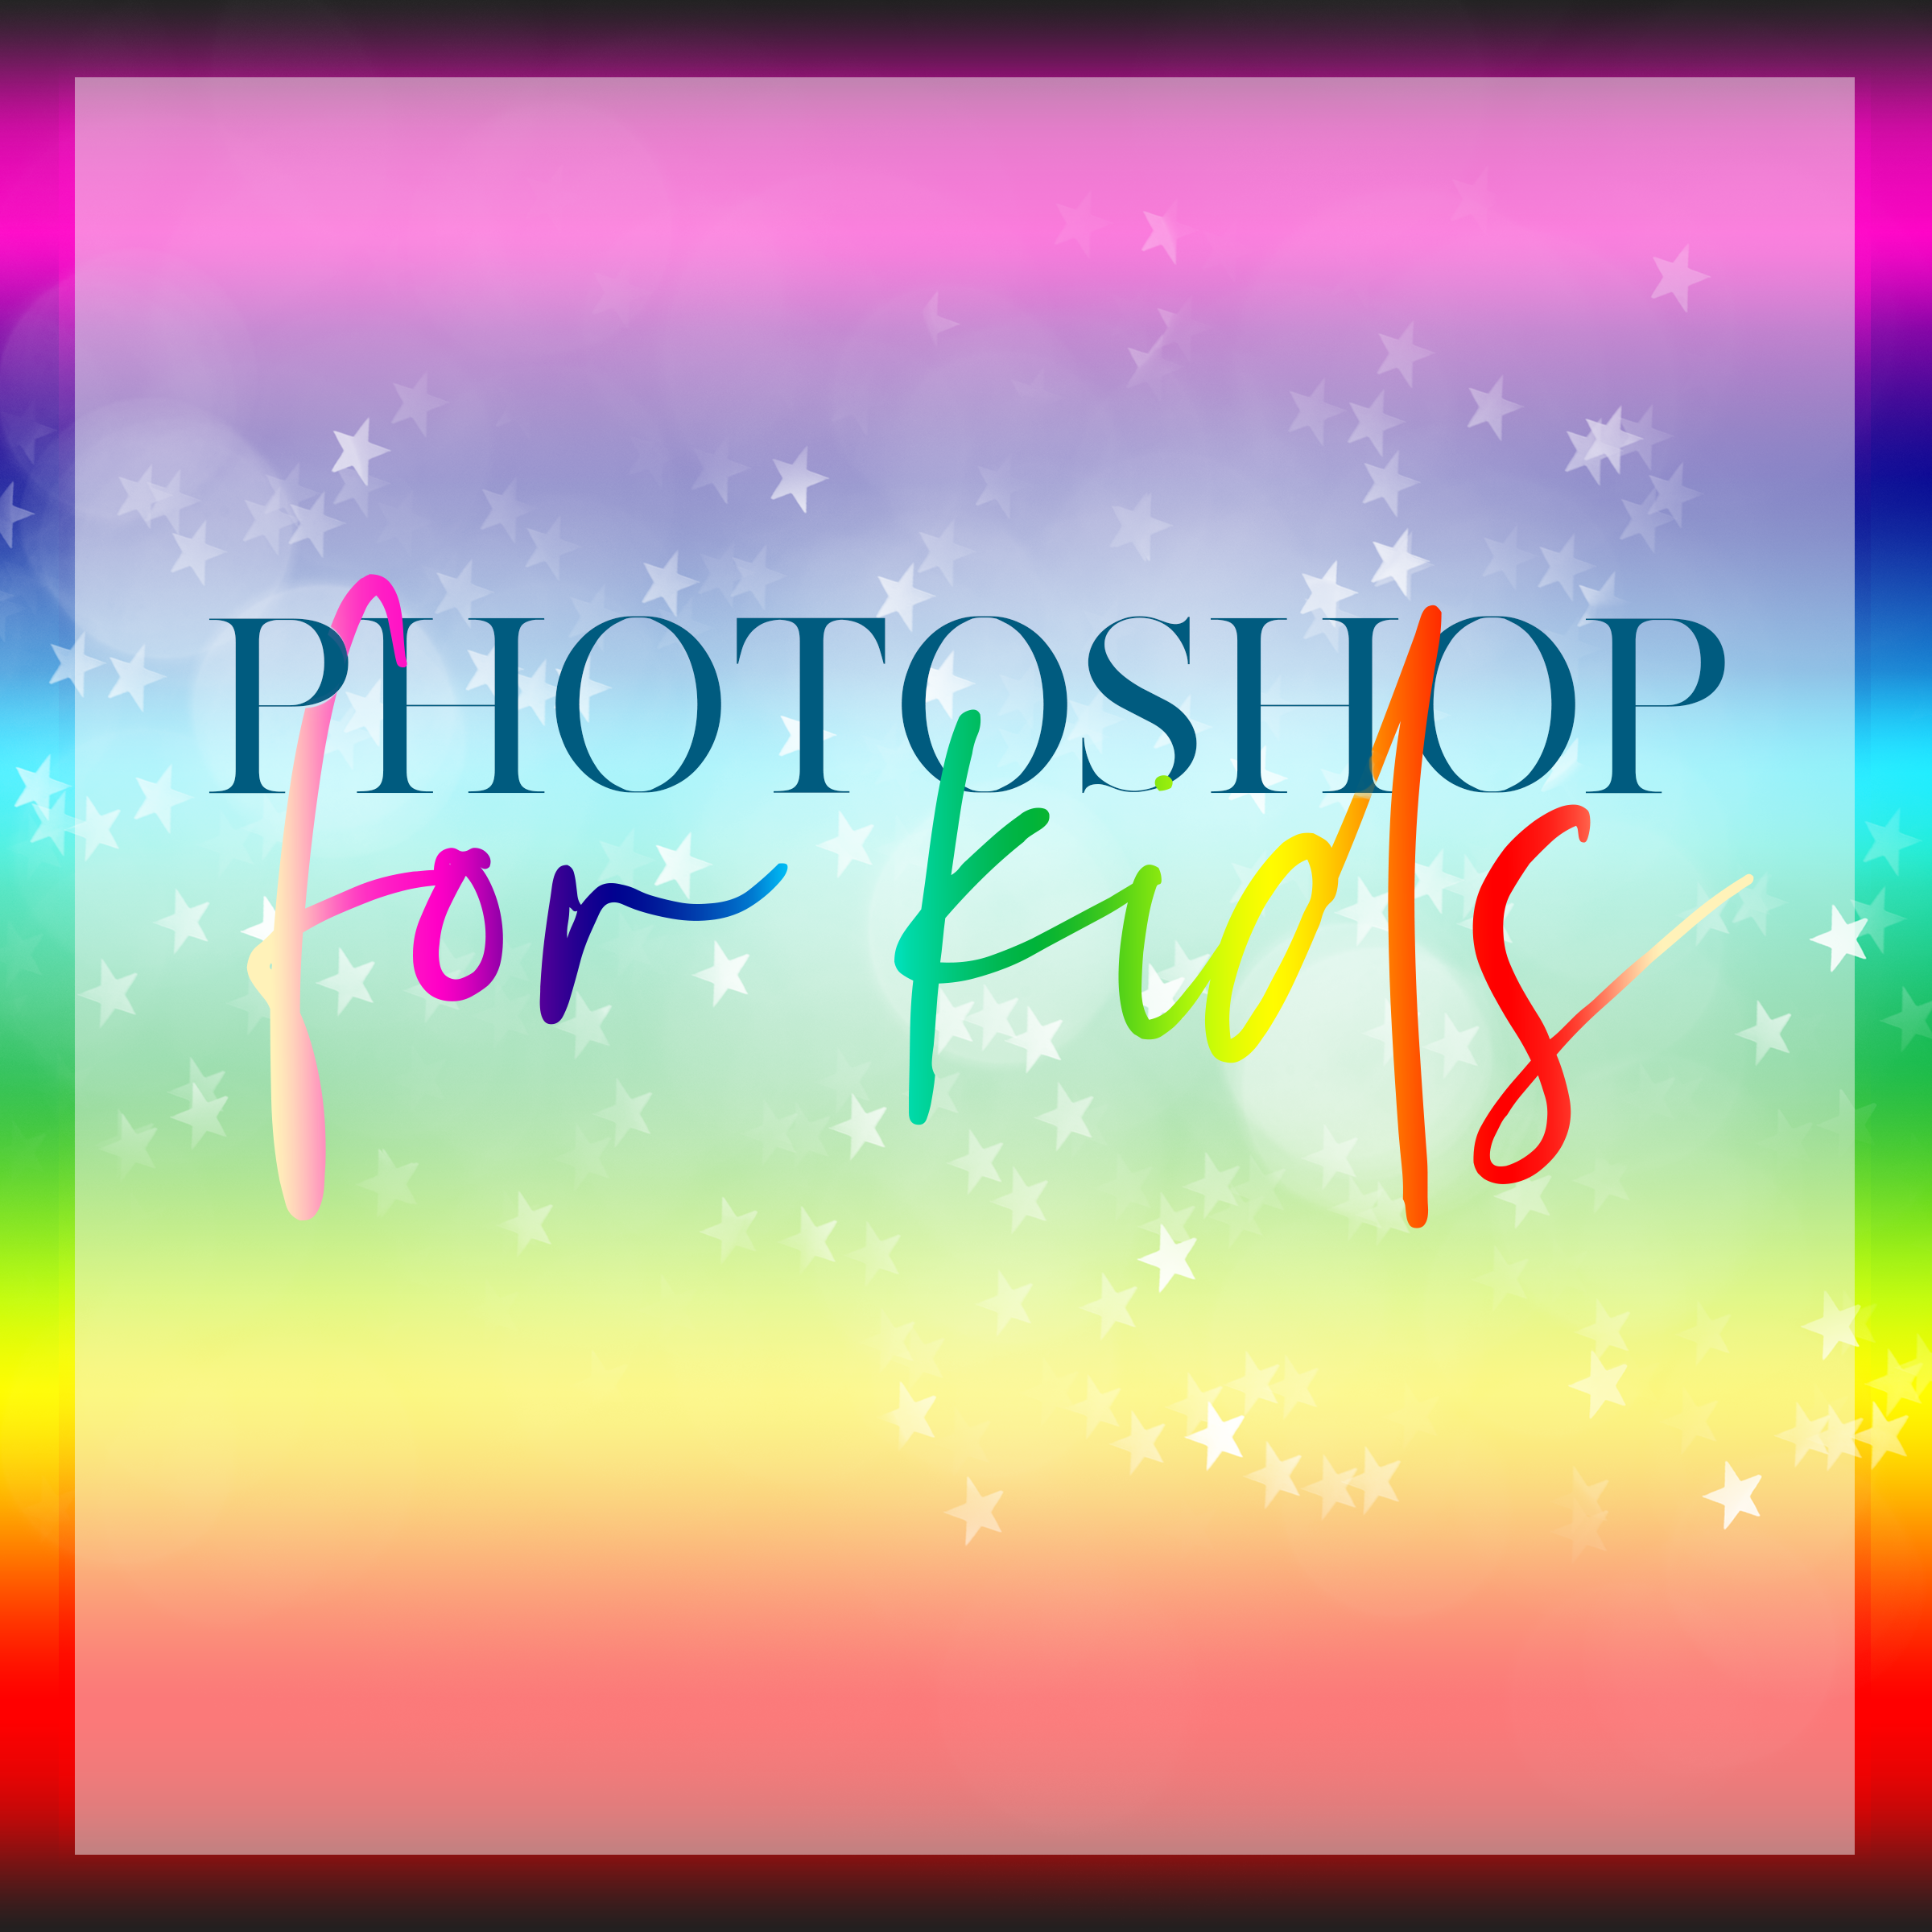 Photoshop for Kids March 2020 - Meg Bitton Productions